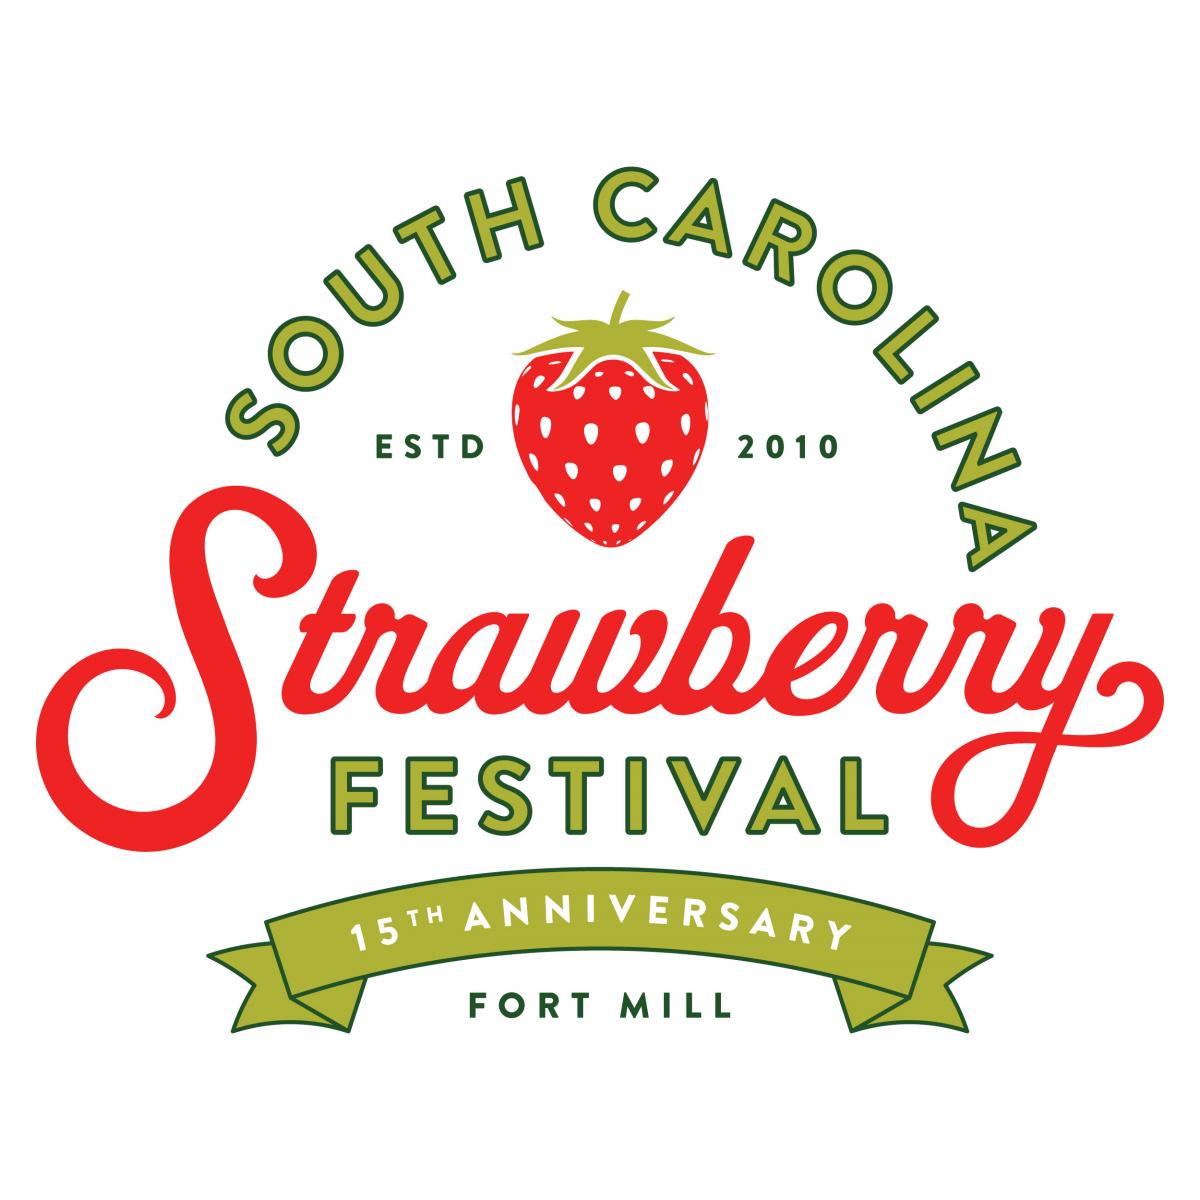 South Carolina Strawberry Festival cover image